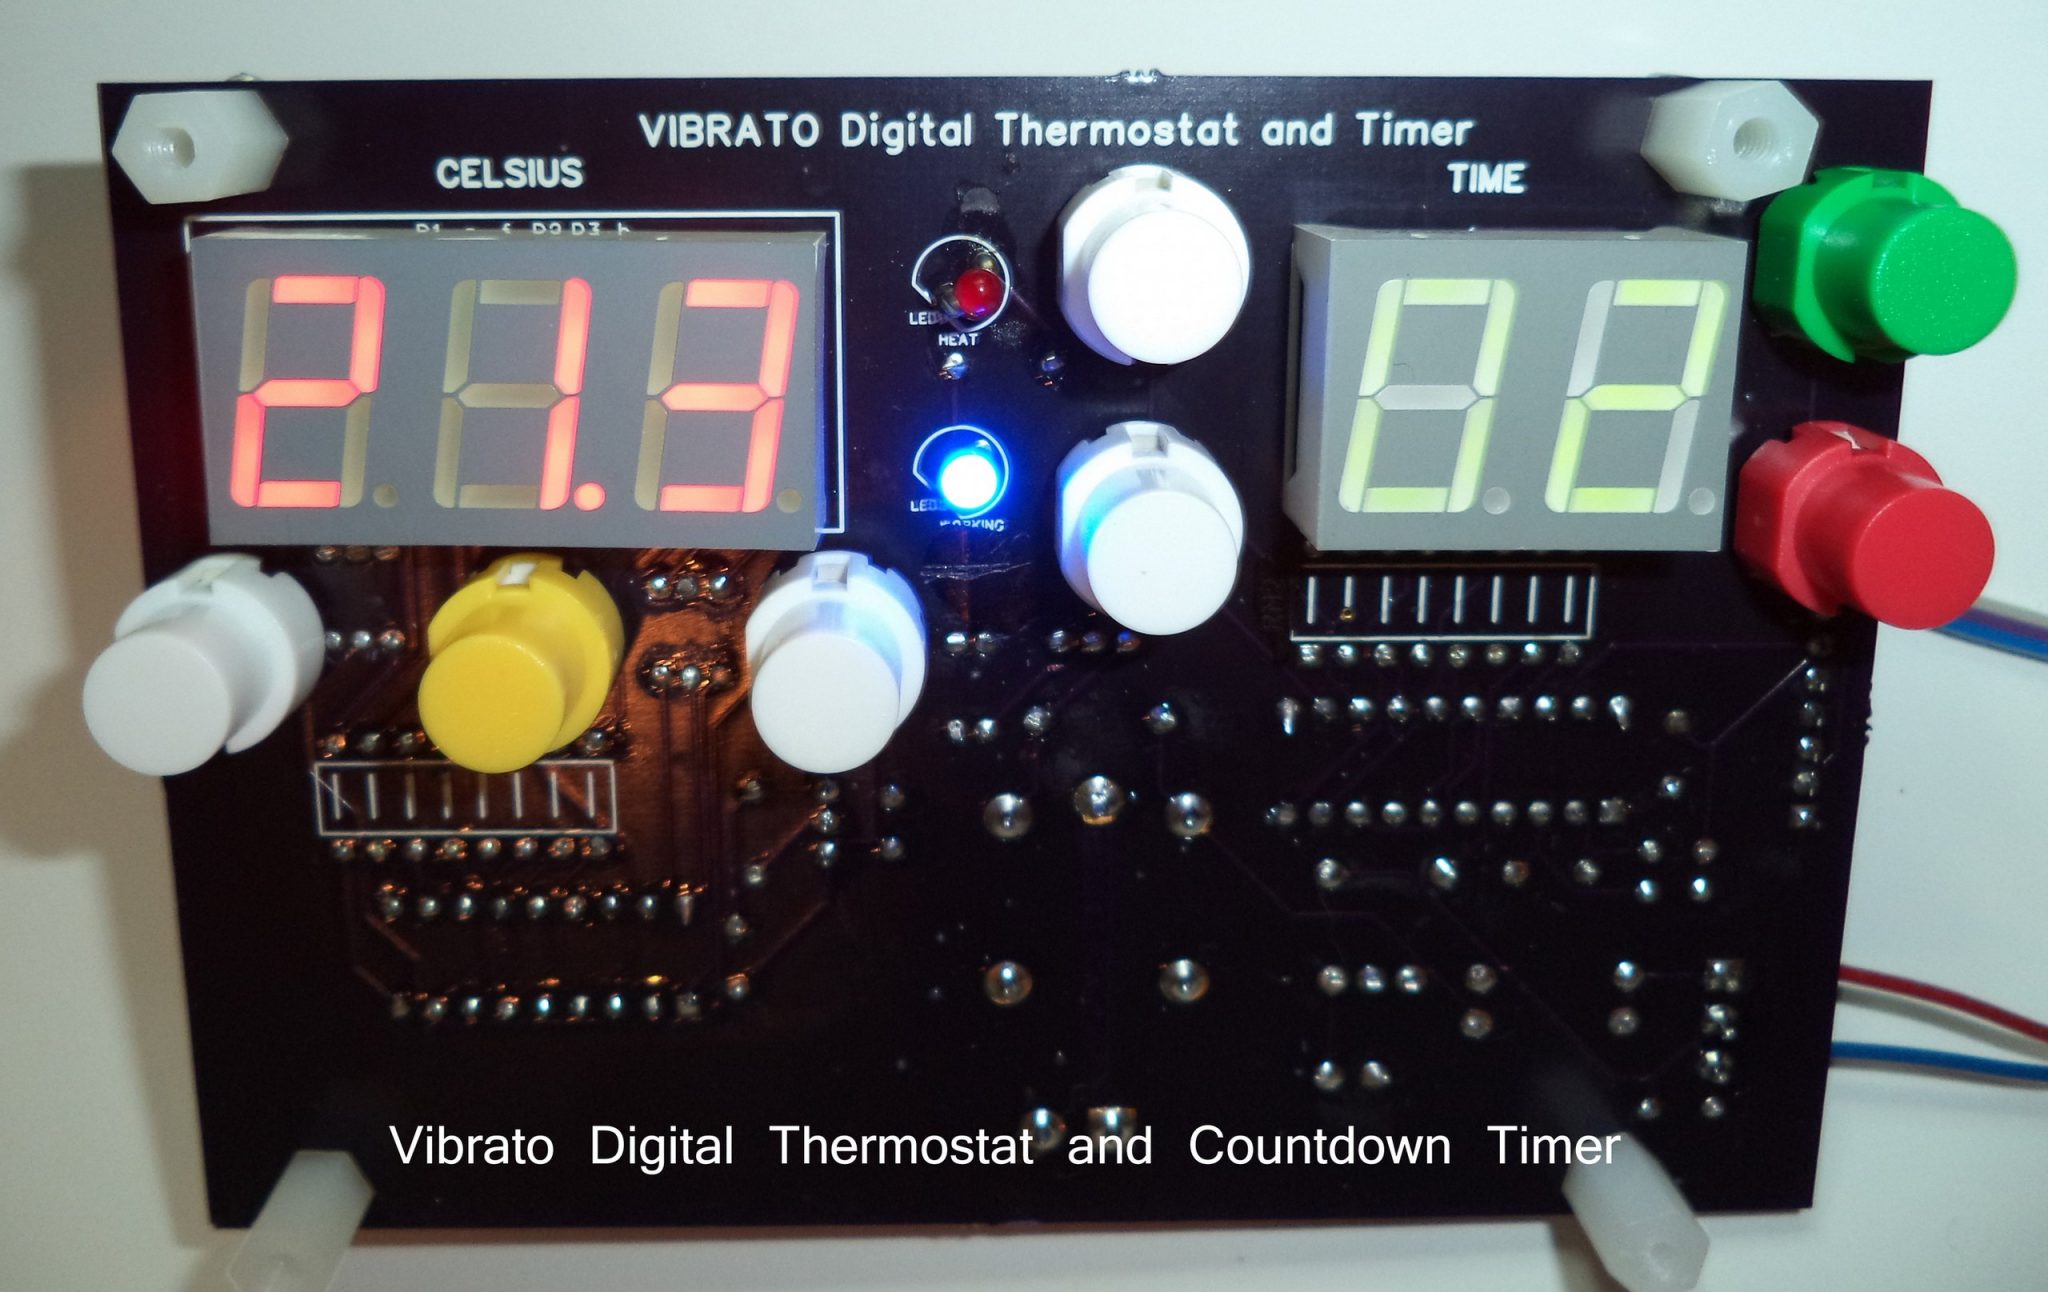 2014-06-19t13-58-07-639z-vibrato-termostato-digital-y-temporizador-jpg-2560x2560_q85